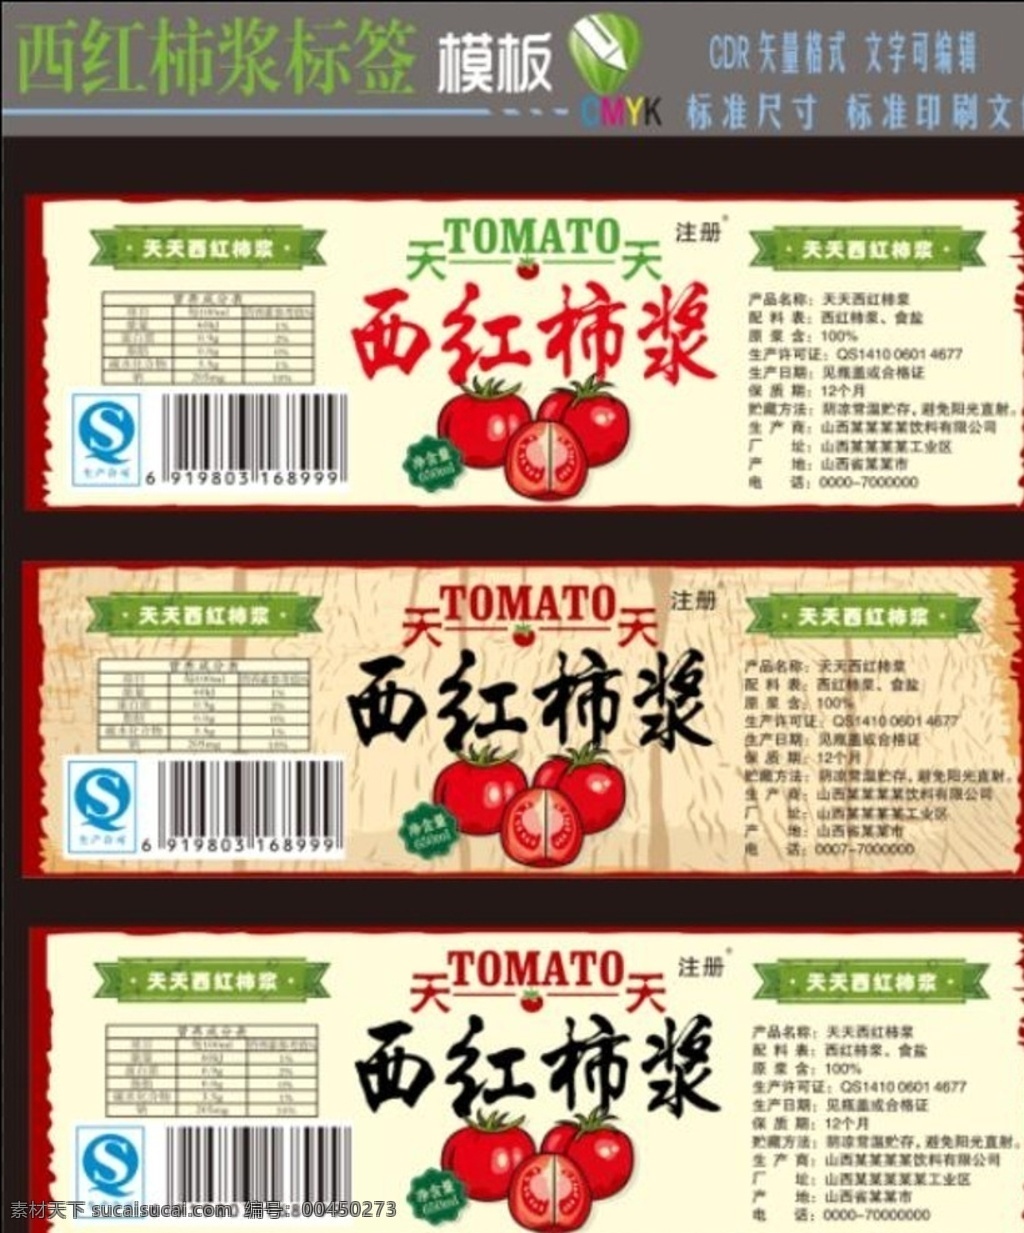 西红柿酱标签 西红柿酱 番茄酱 标签 食品标 围标 创意标签 时尚标签 包装设计